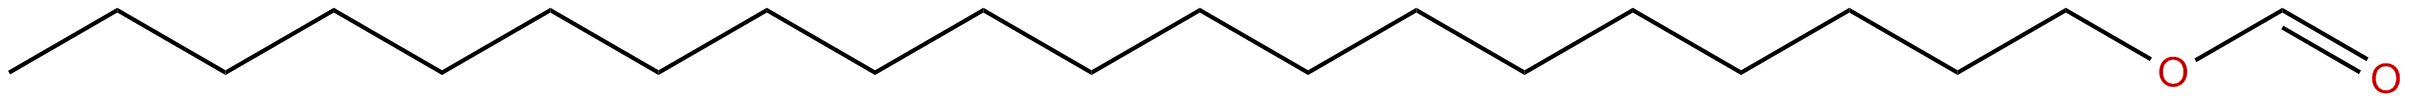 Image of eicosyl methanoate